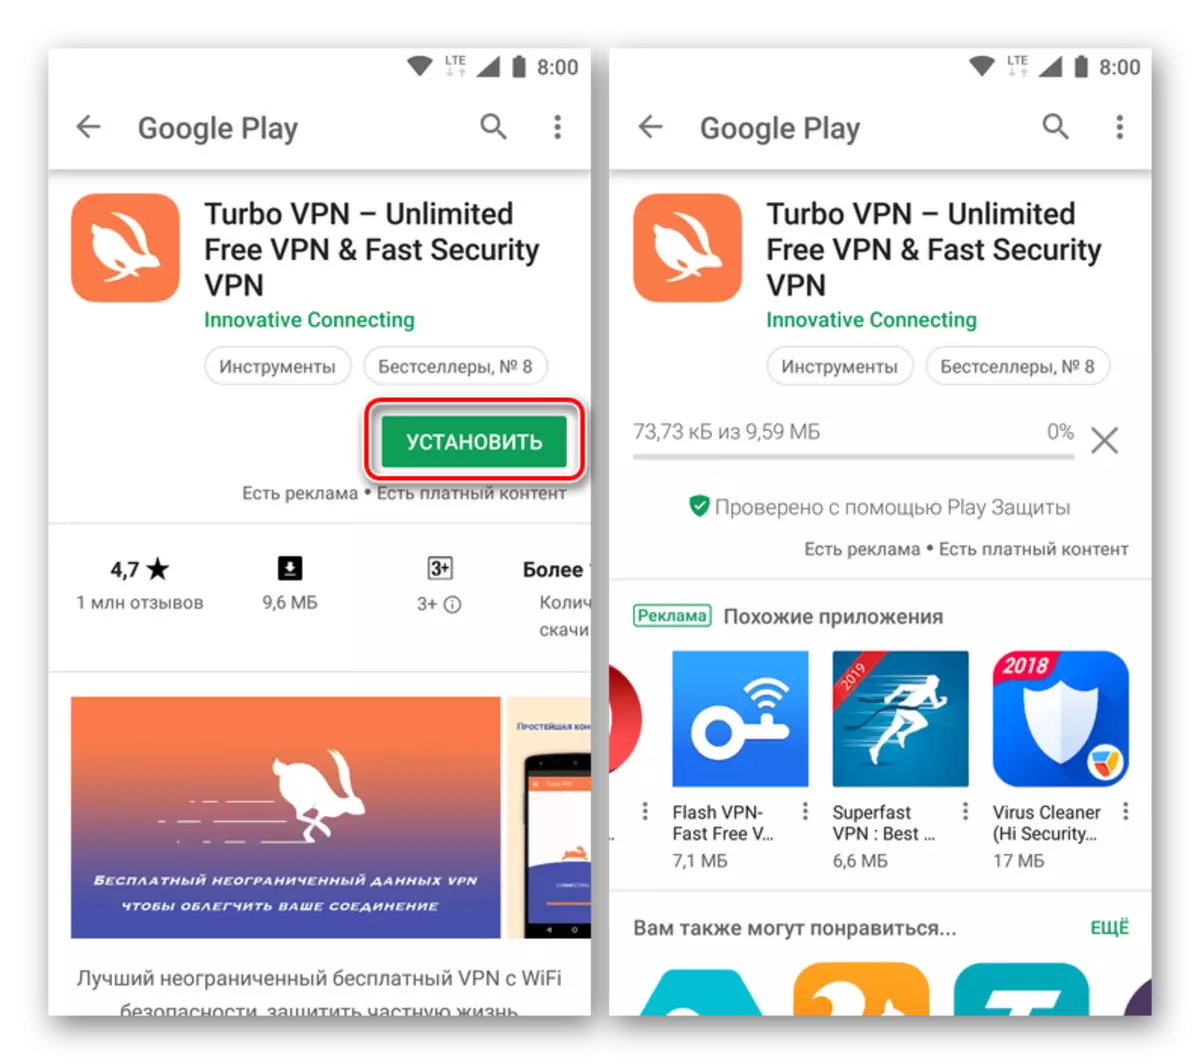 Töltse le a Turbo VPN alkalmazást a Google Play Market az Android számára